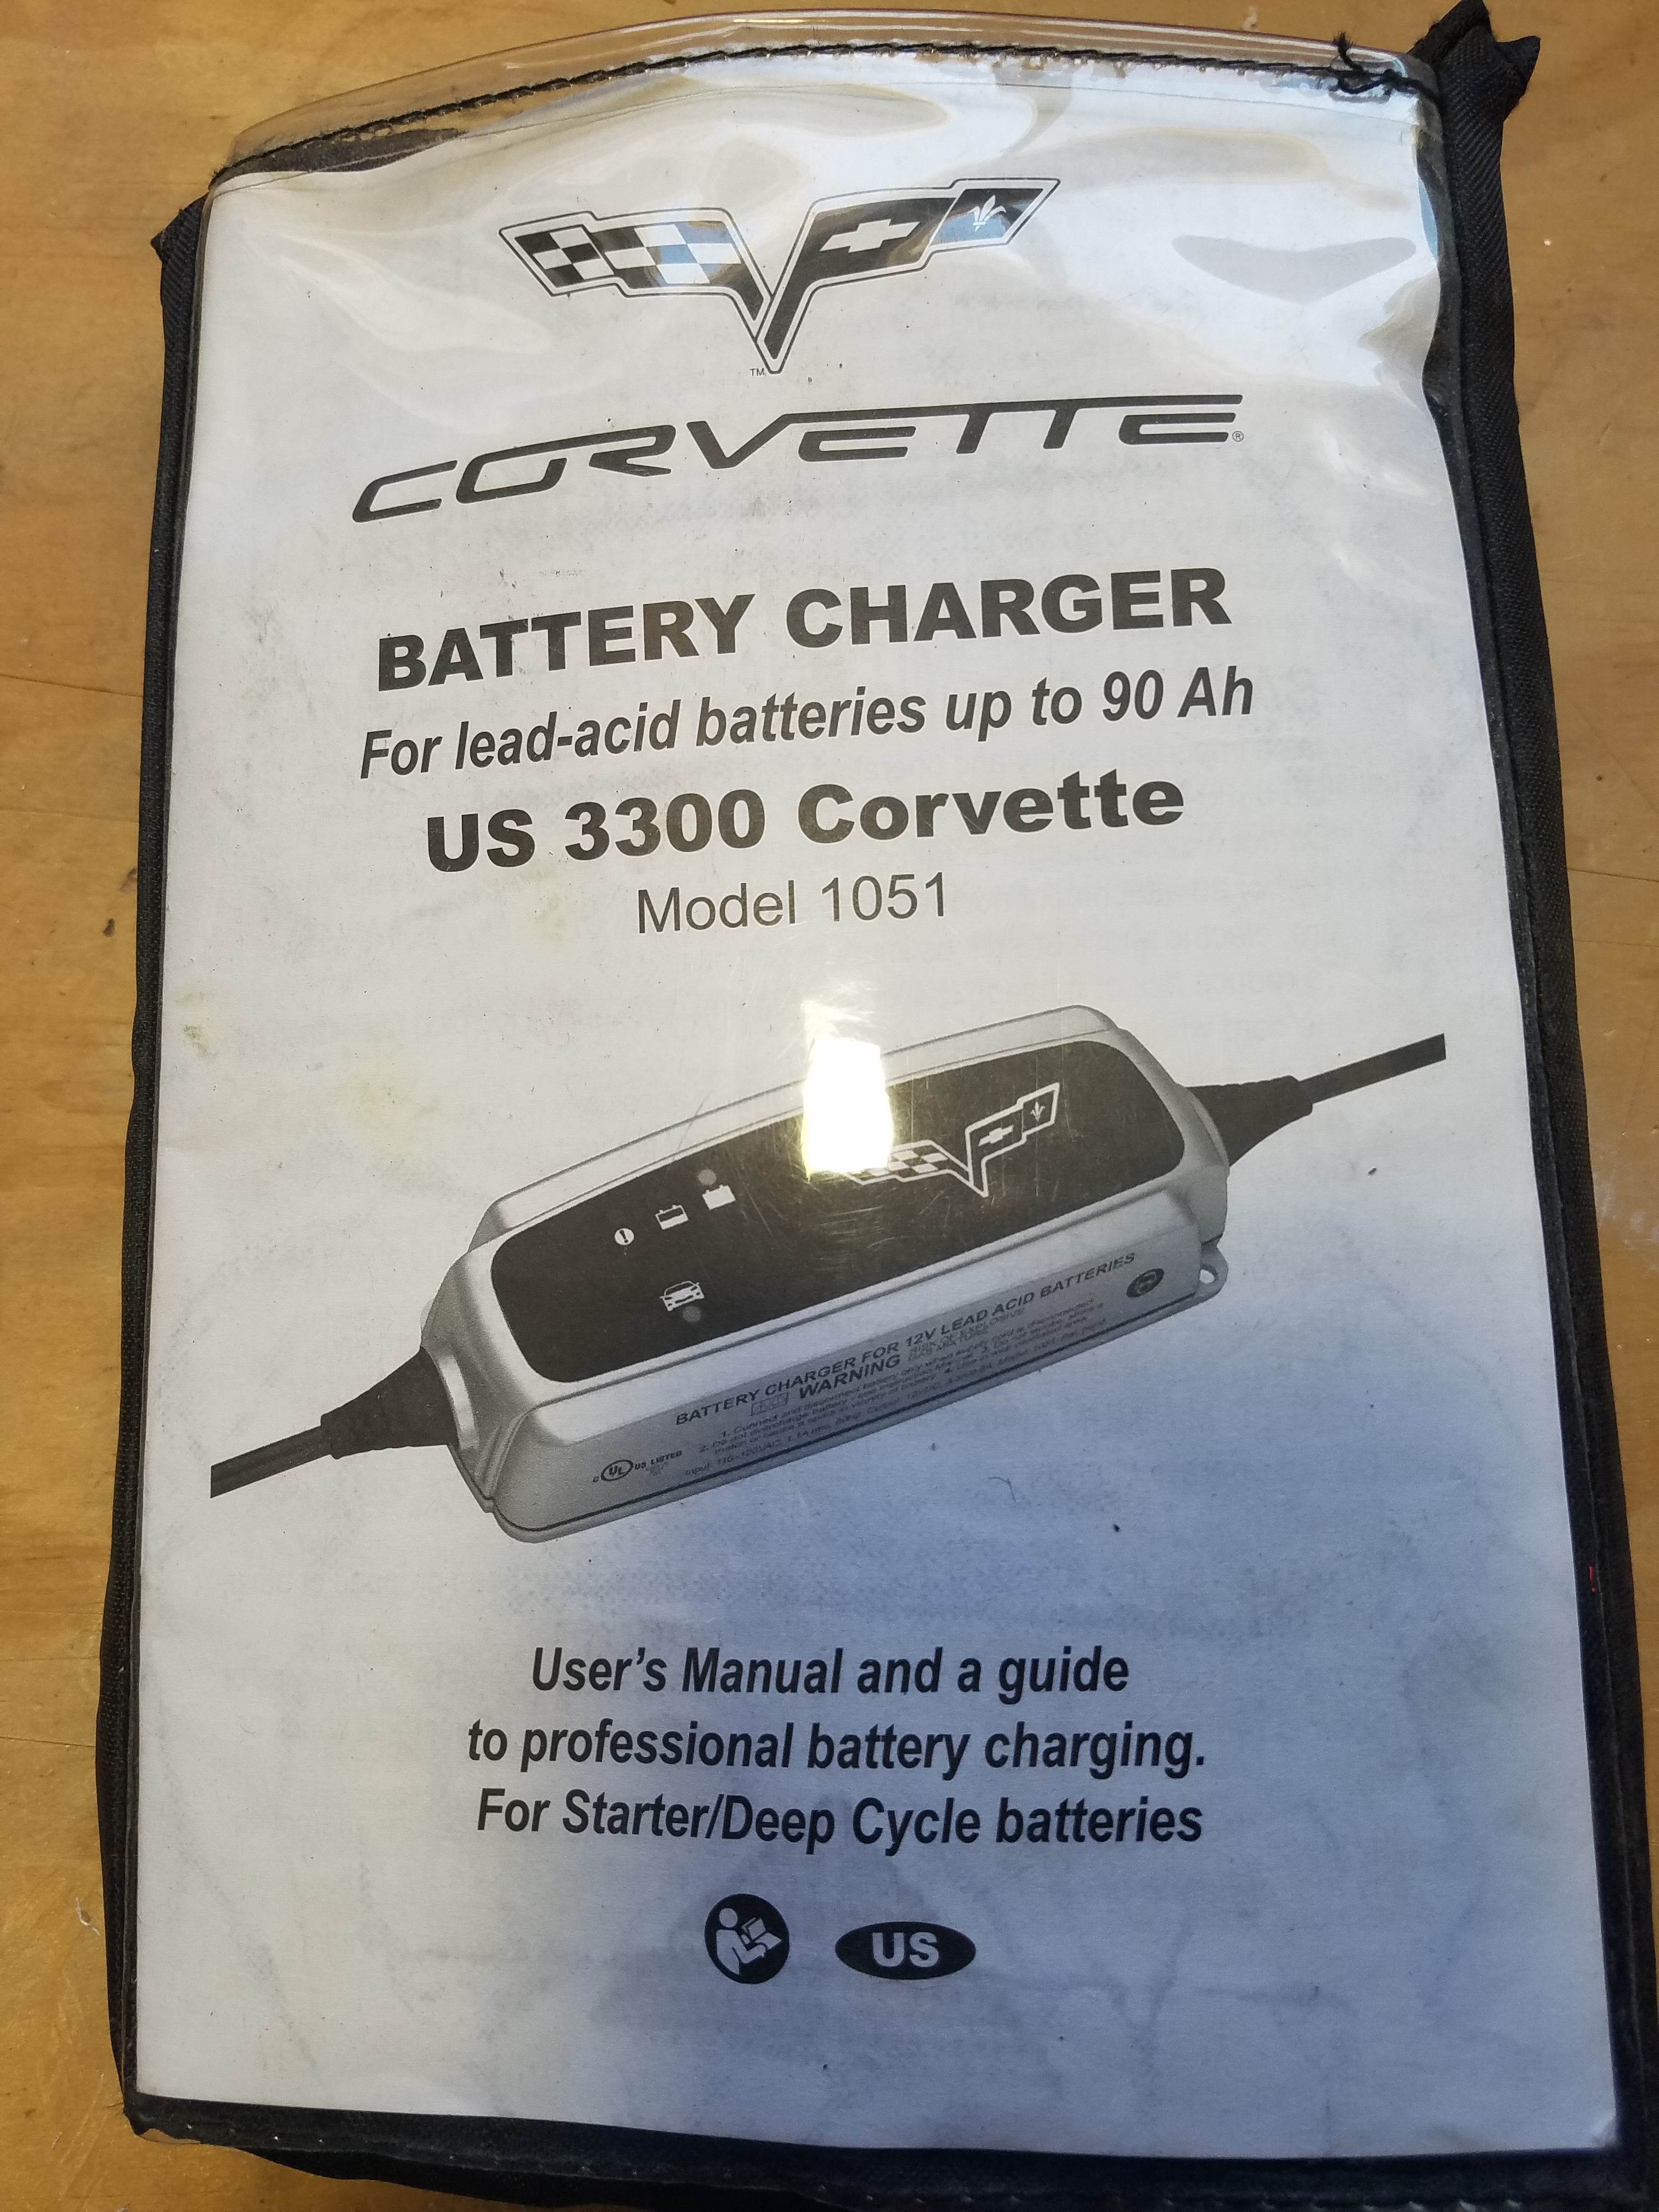 FS (For Sale) Battery tender - CorvetteForum - Chevrolet Corvette Forum